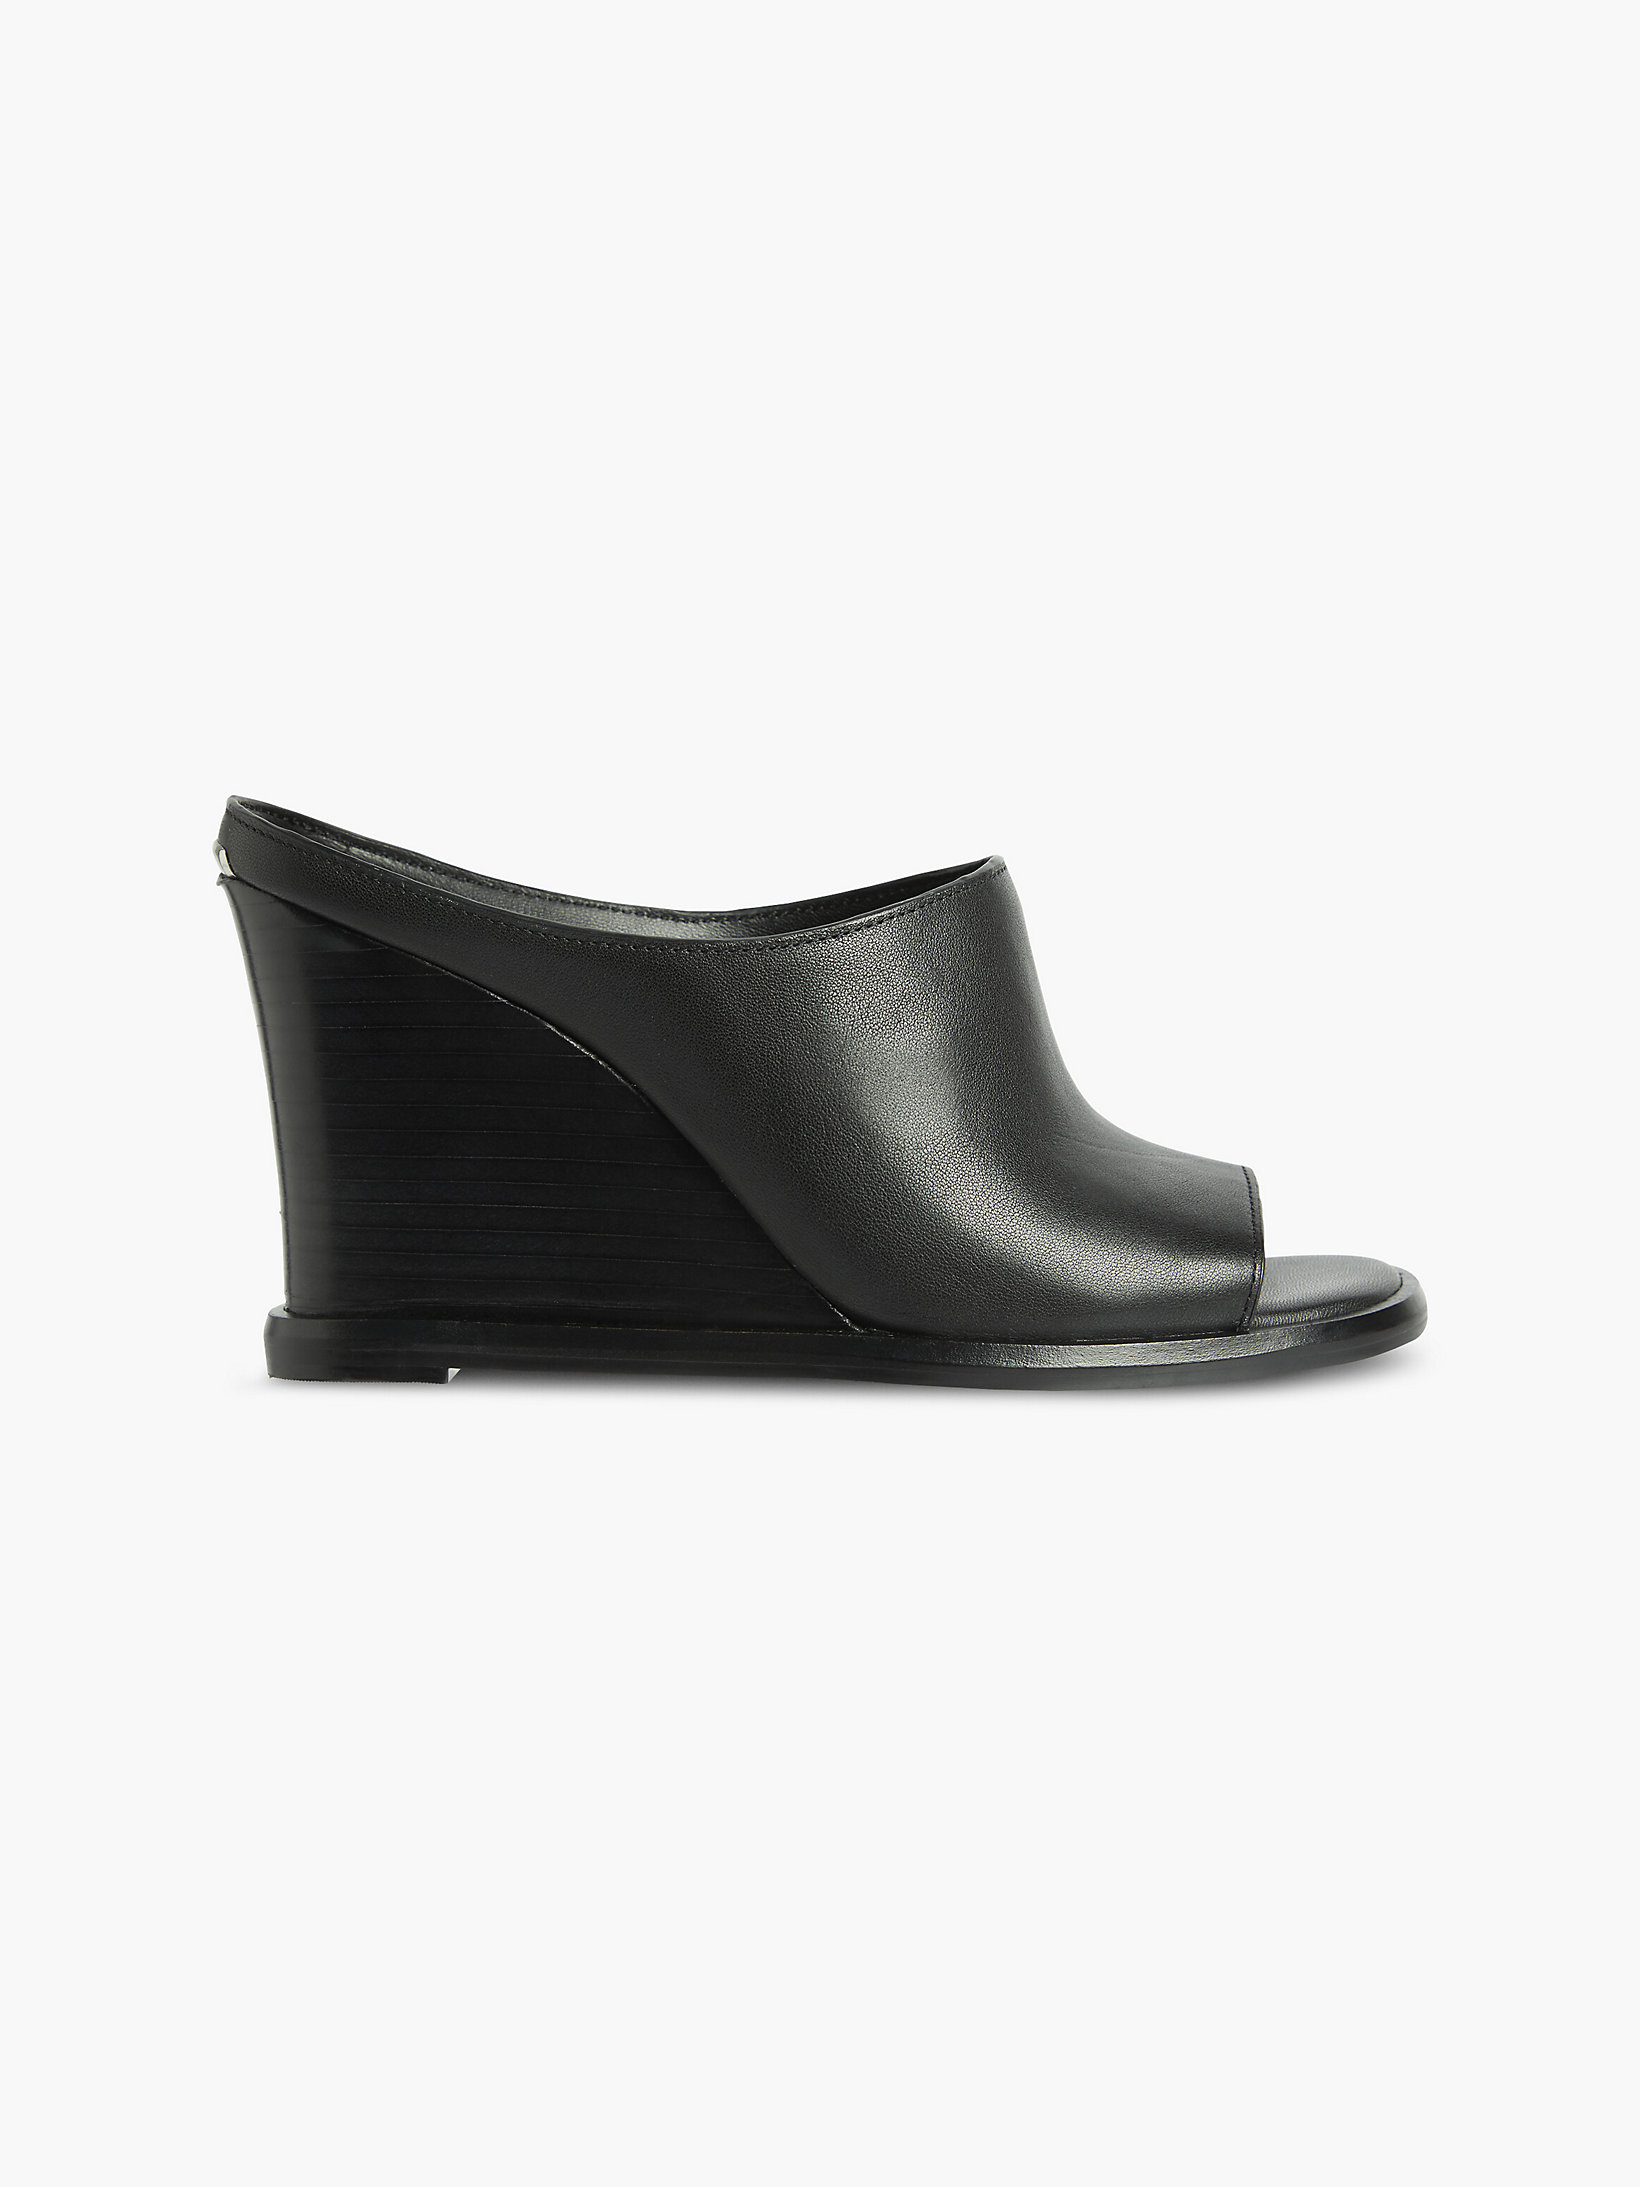 CK Black Leather Wedge Sandals undefined women Calvin Klein